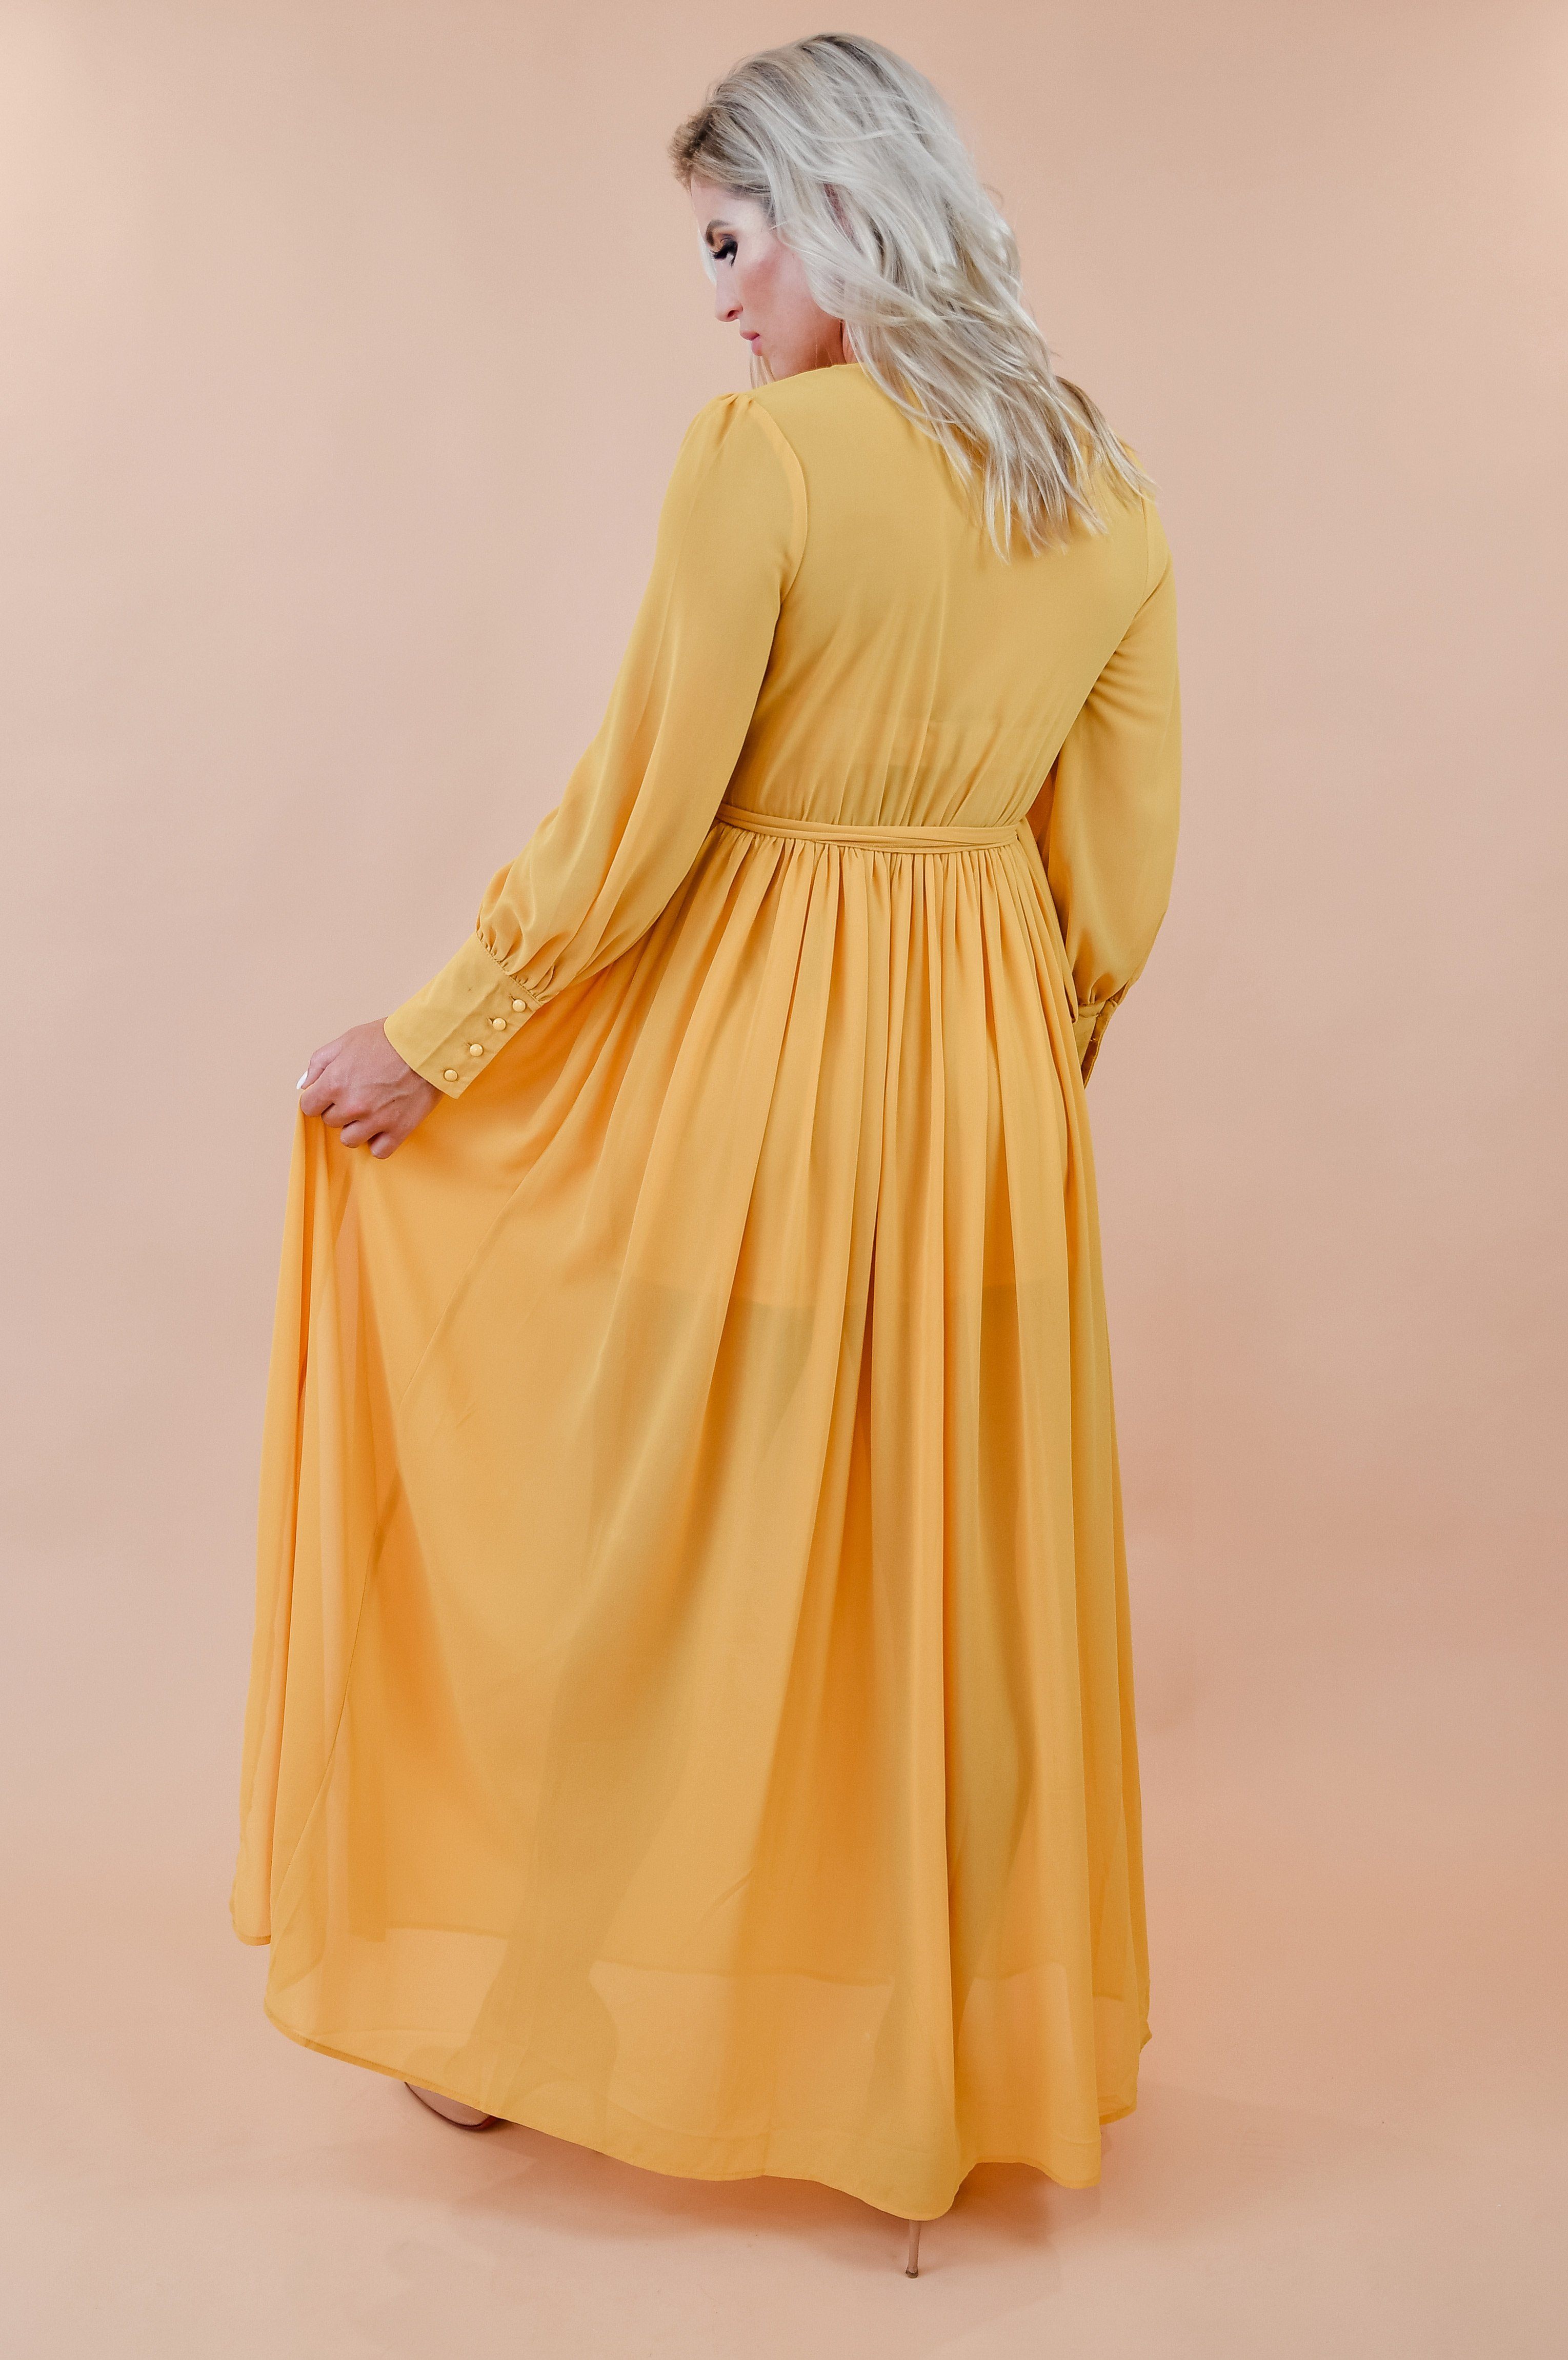 mustard yellow chiffon dress